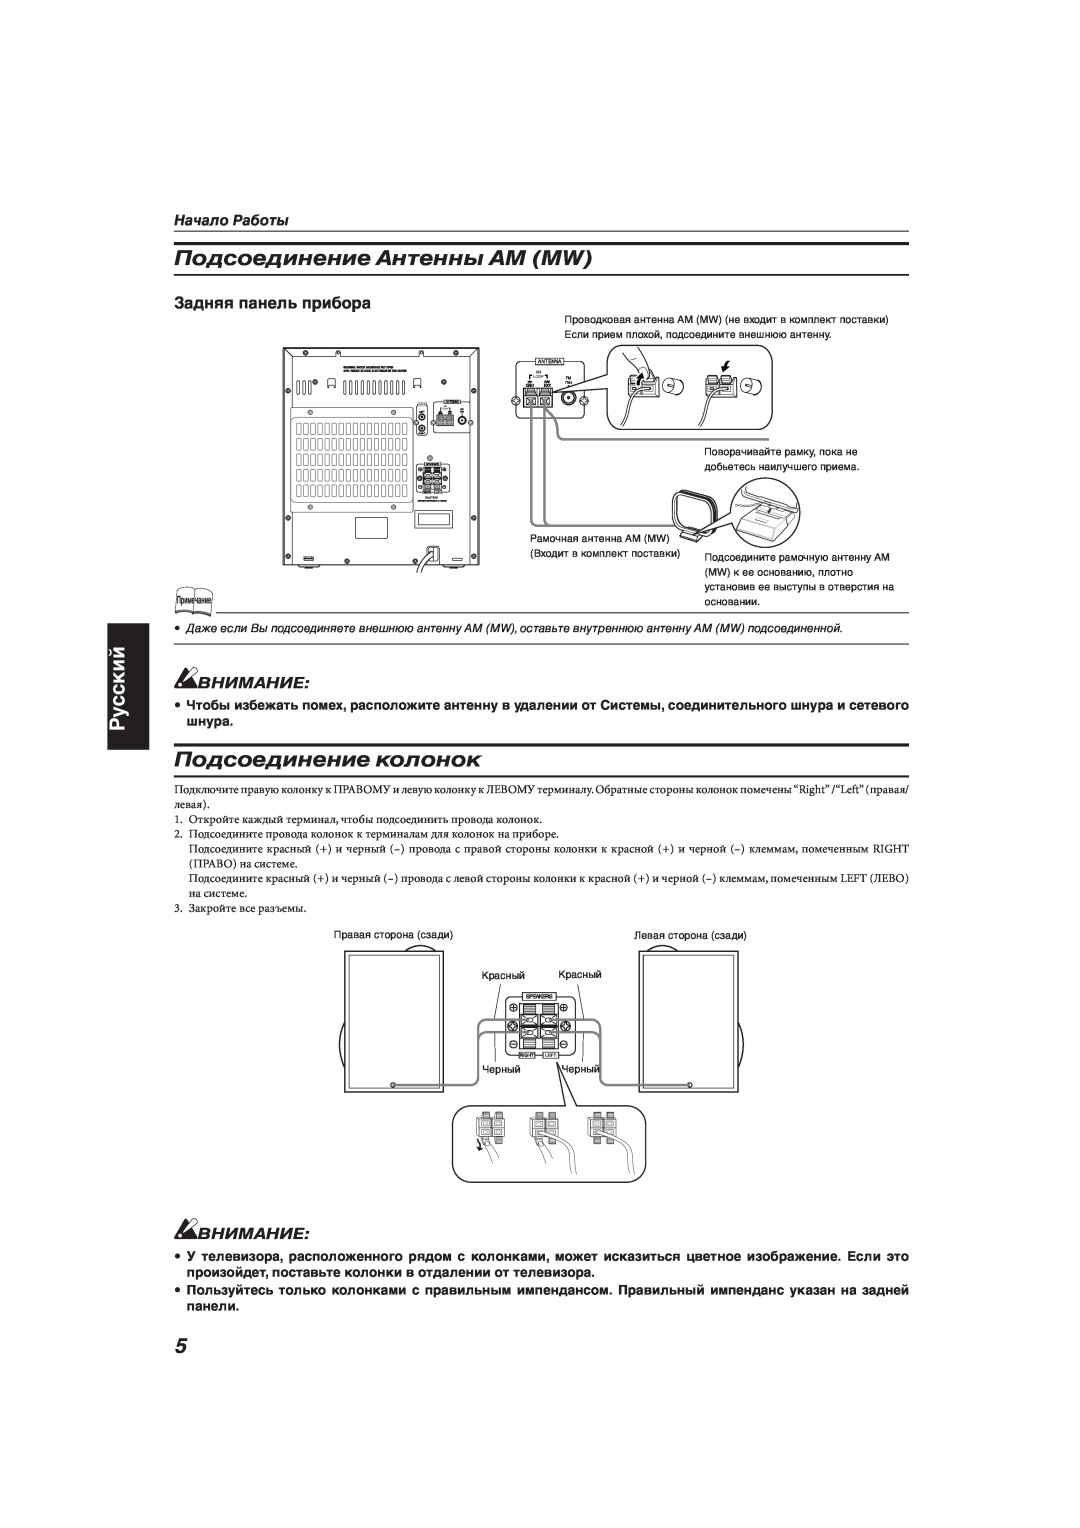 JVC MX-KA66 manual Подсоединение Антенны АМ MW, Подсоединение колонок, Русский, Внимание, Начало Работы 